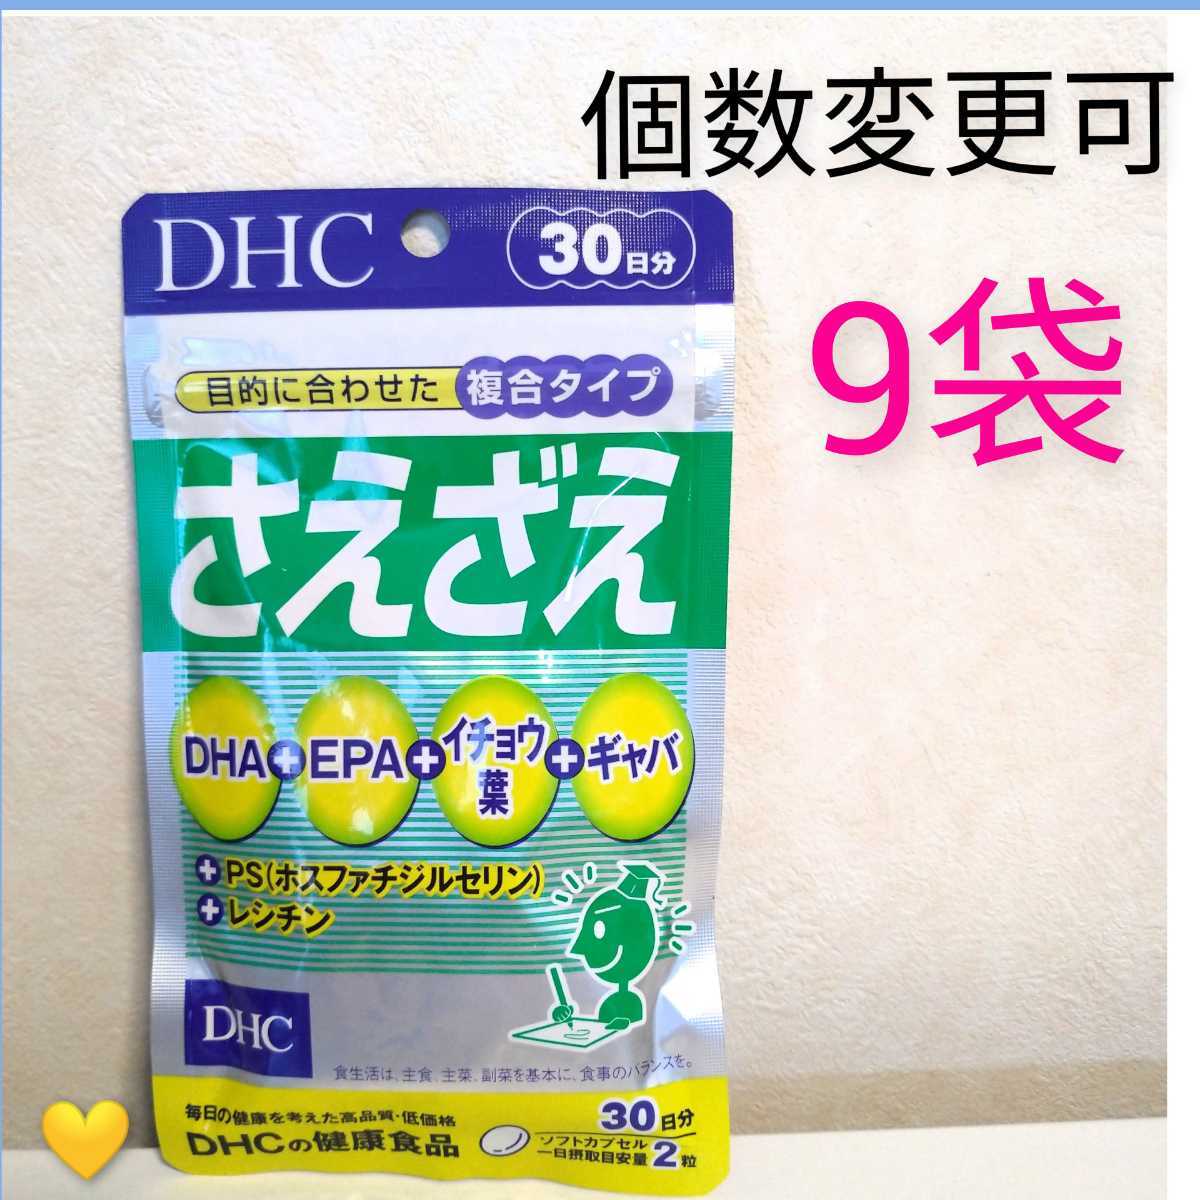 驚きの値段で DHC さえざえ 30日分 60粒 ×3パック ディーエイチシー サプリメント PS DHA イチョウ葉 ギャバ 健康食品 粒タイプ 